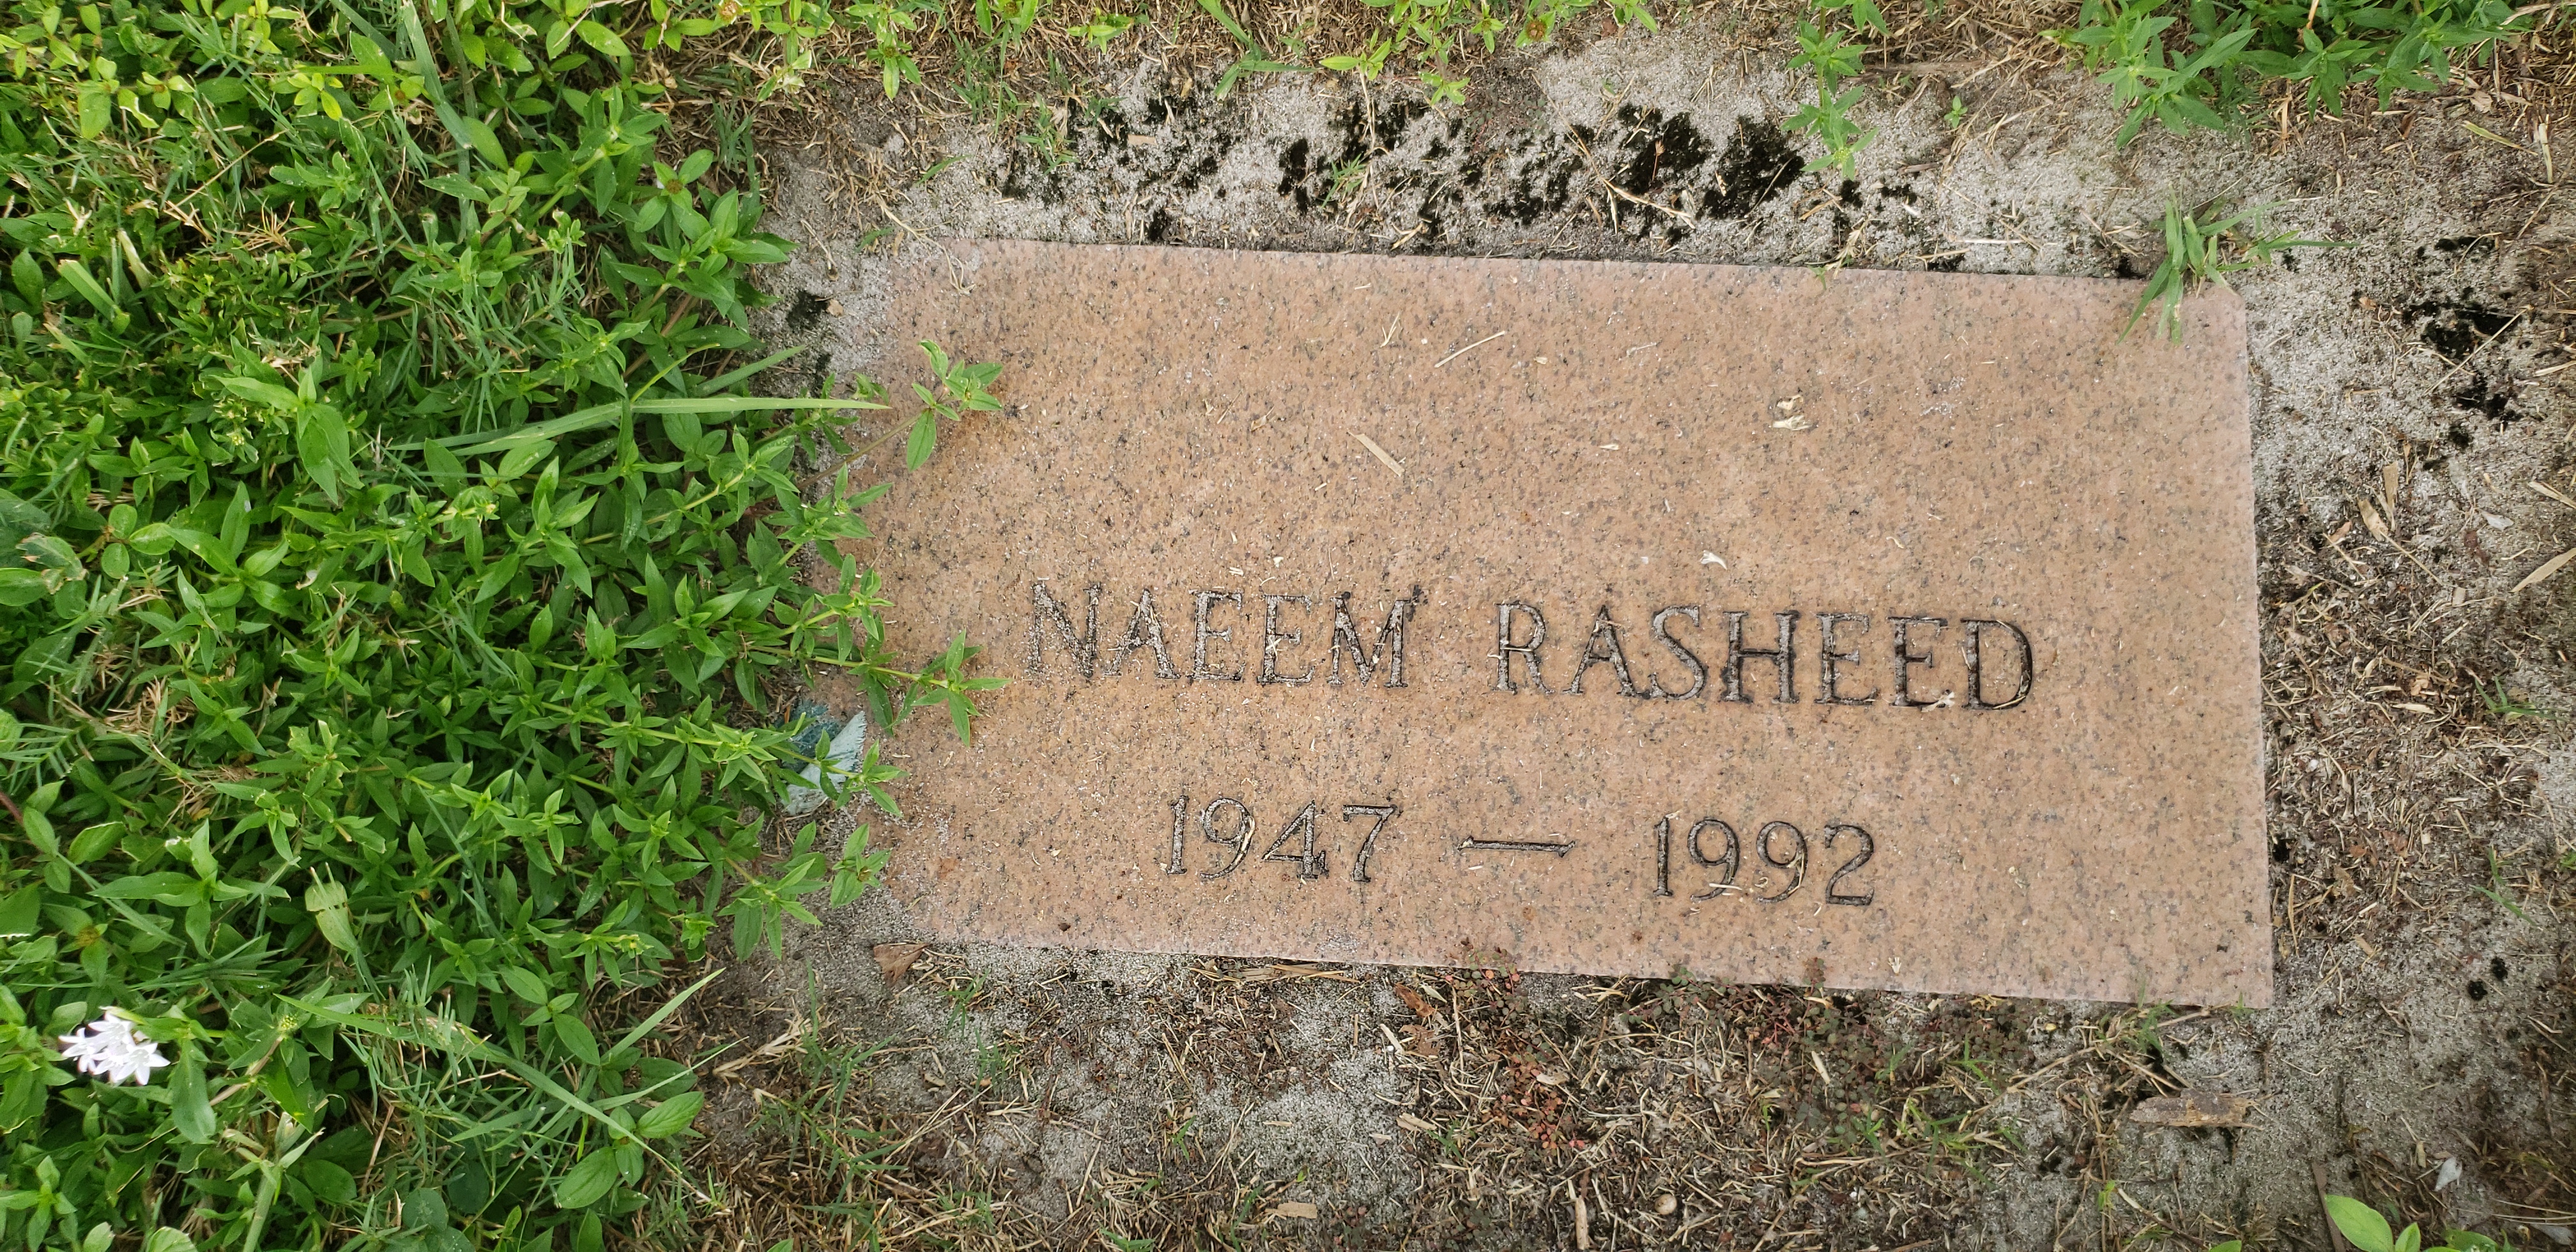 Naeem Rasheed